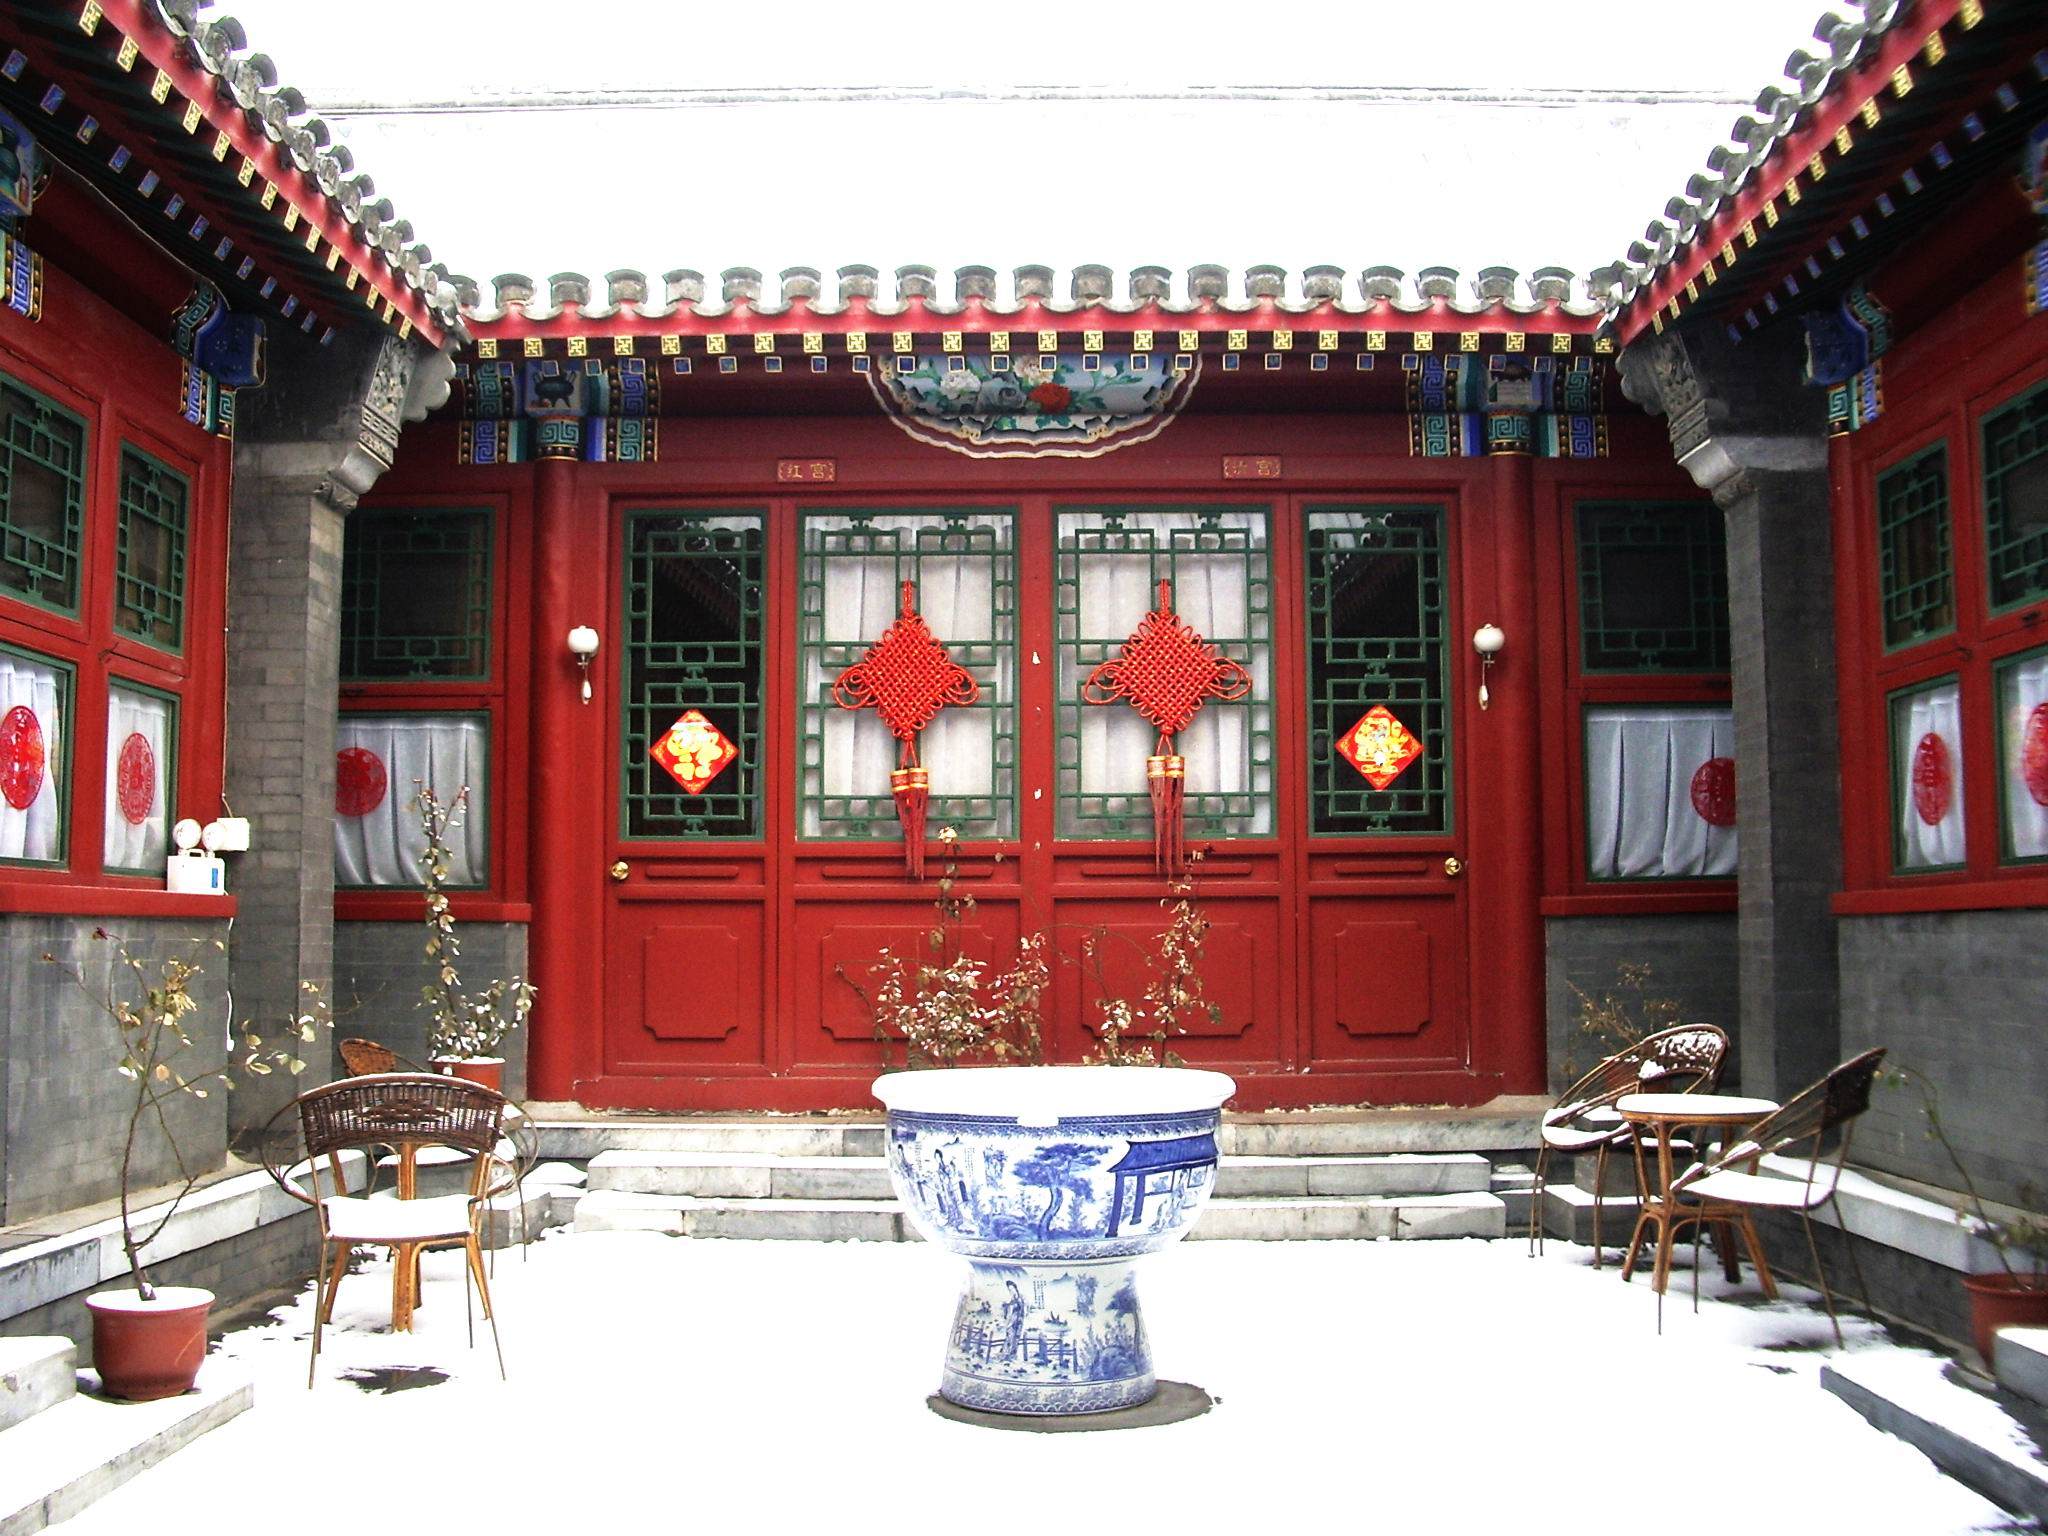  Kiến trúc và nội thất nhà cổ Trung Quốc